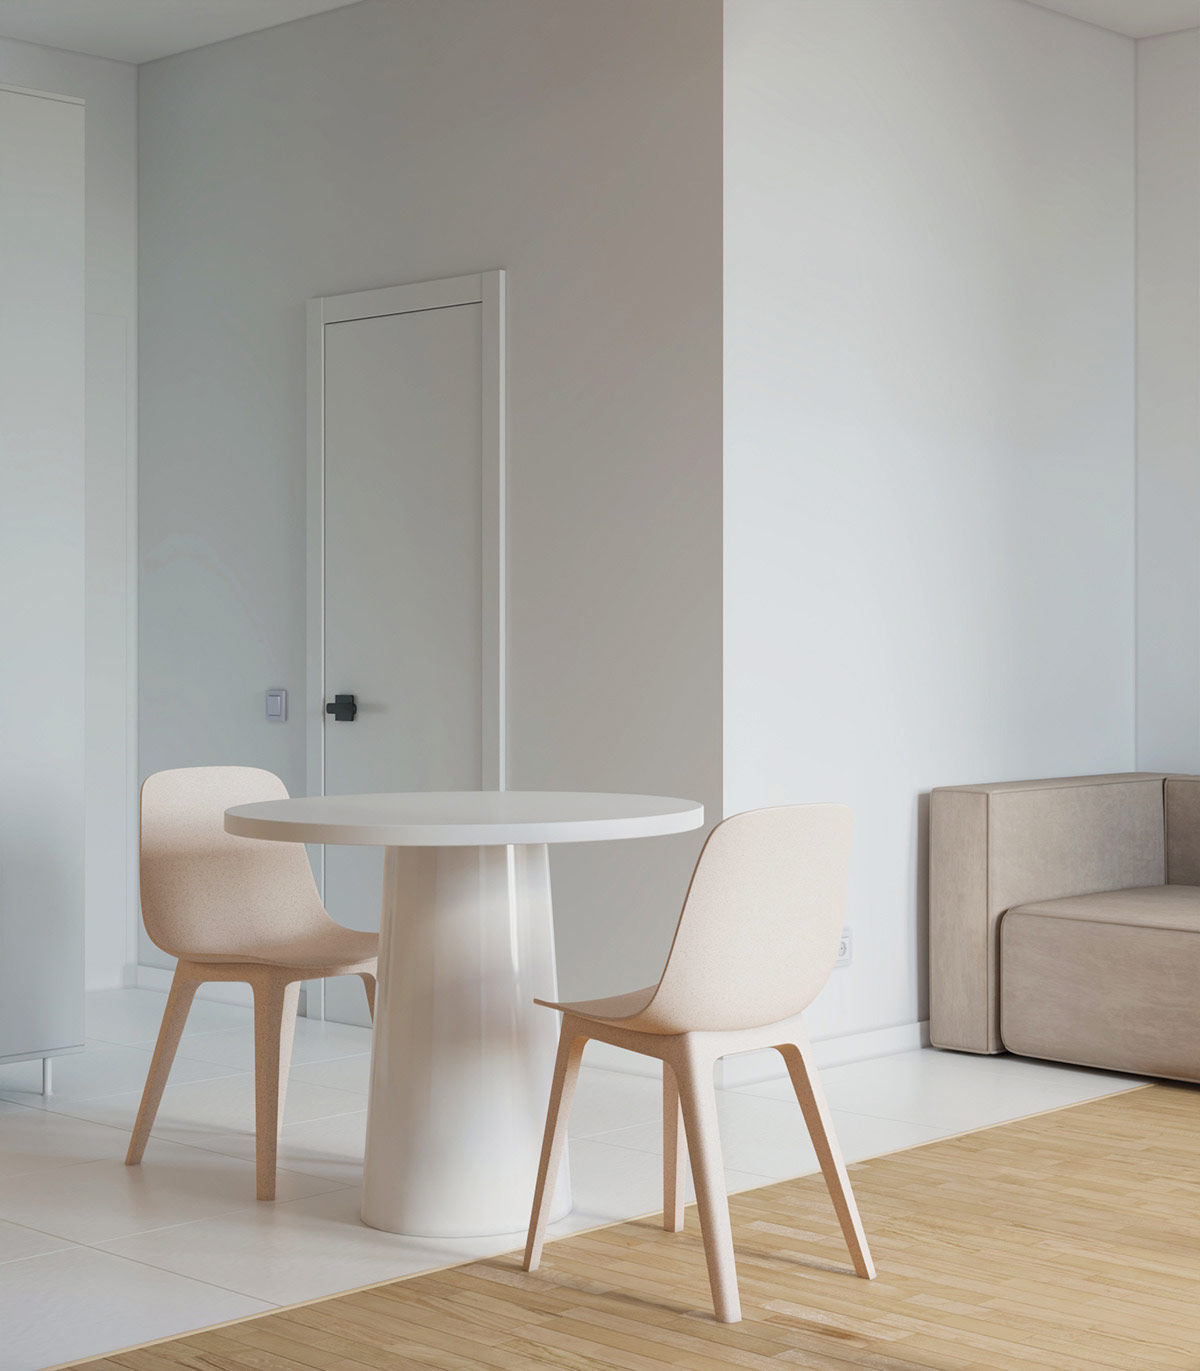 Bộ bàn ăn nhỏ được đặt chồng lên trên cả gạch trắng từ nhà bếp và sàn gỗ thông chắc chắn của phòng khách, tạo sự phân tách tương đối giữa các khu vực chức năng.